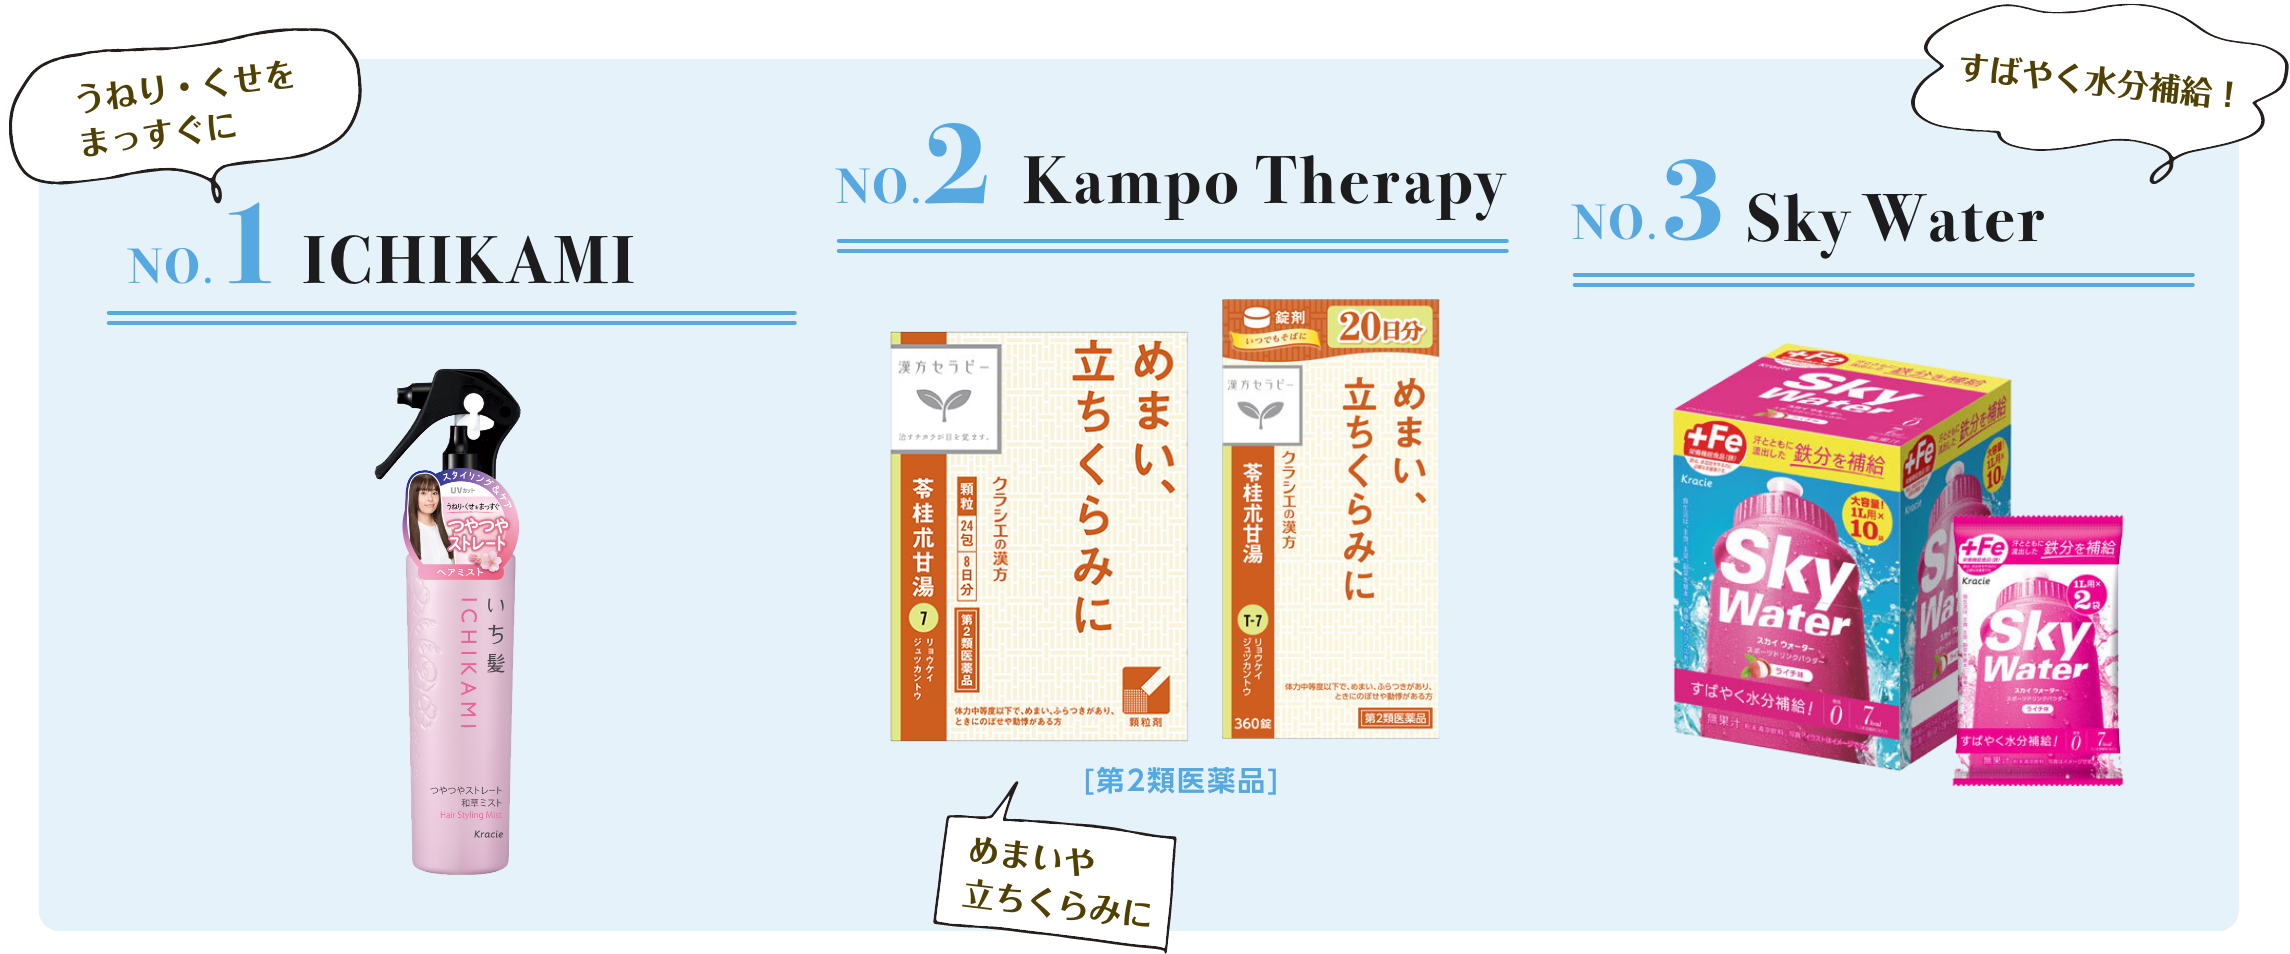 NO.1 ICHIKAMI NO.2 Kampo Therapy NO.3 Sky Water